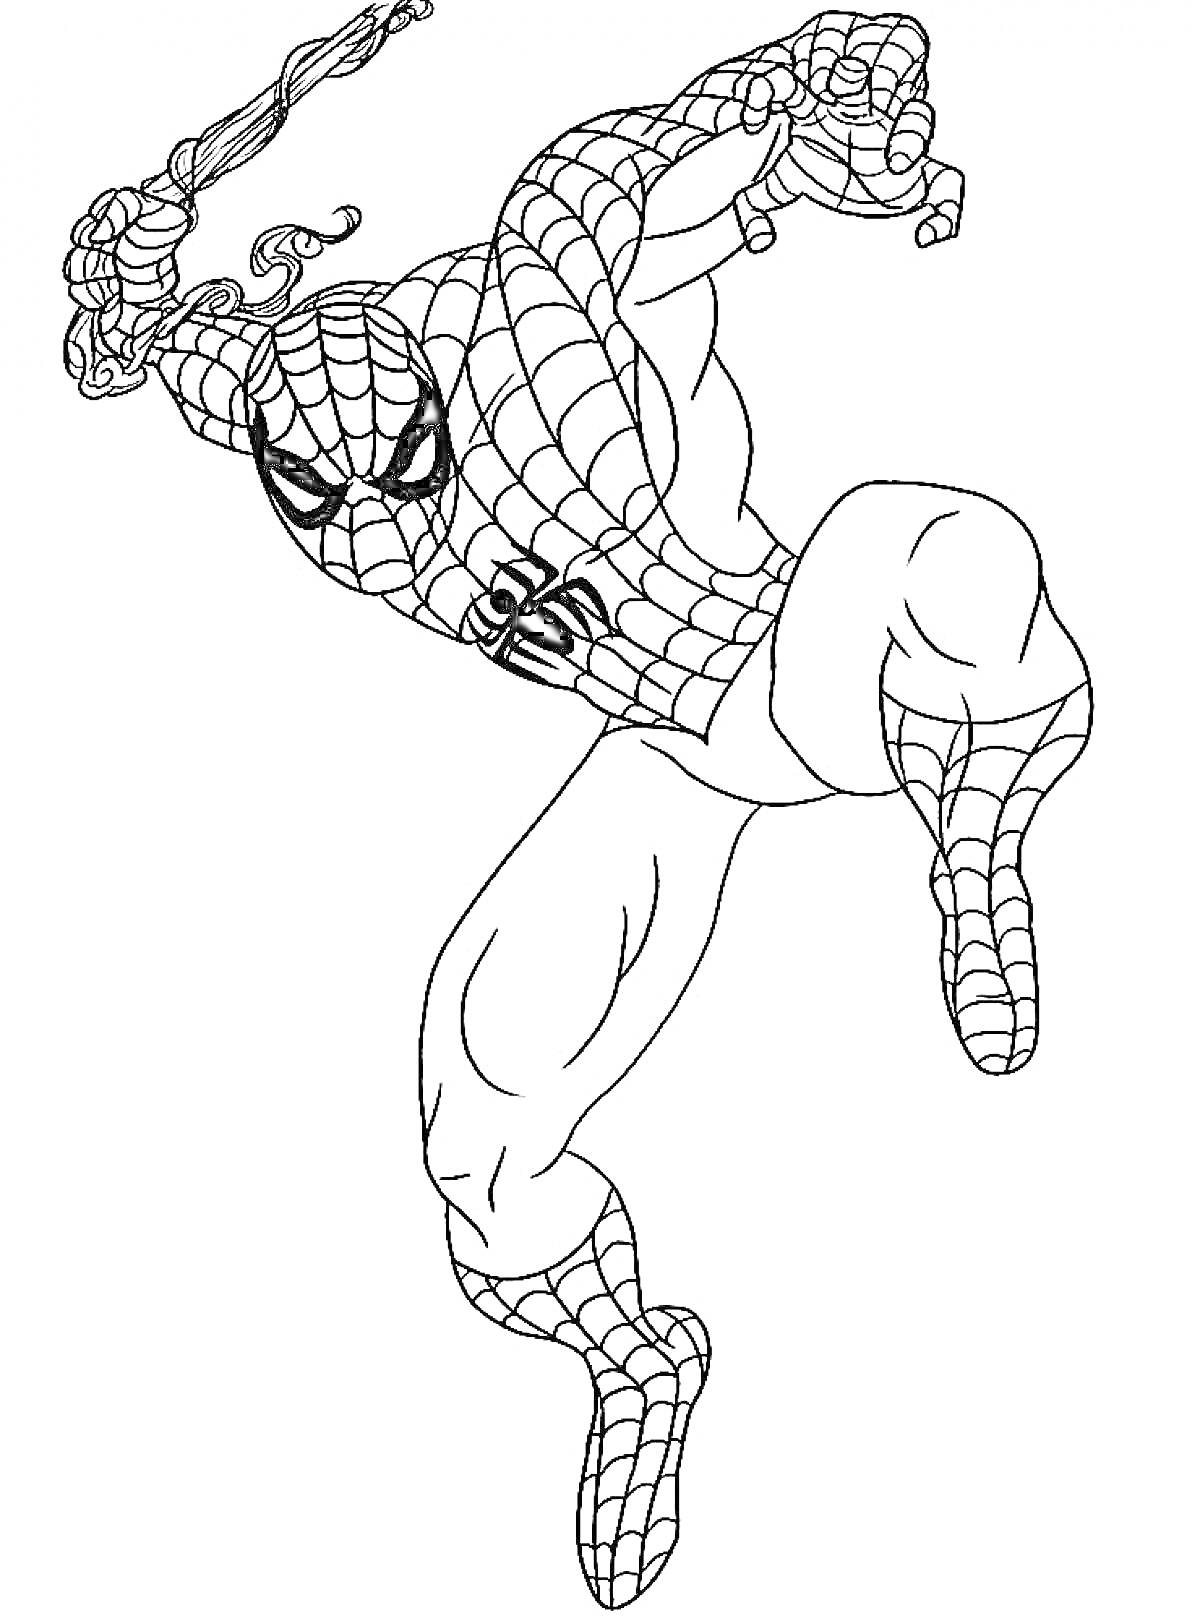 Раскраска Человек-паук в полете, стреляющий паутиной